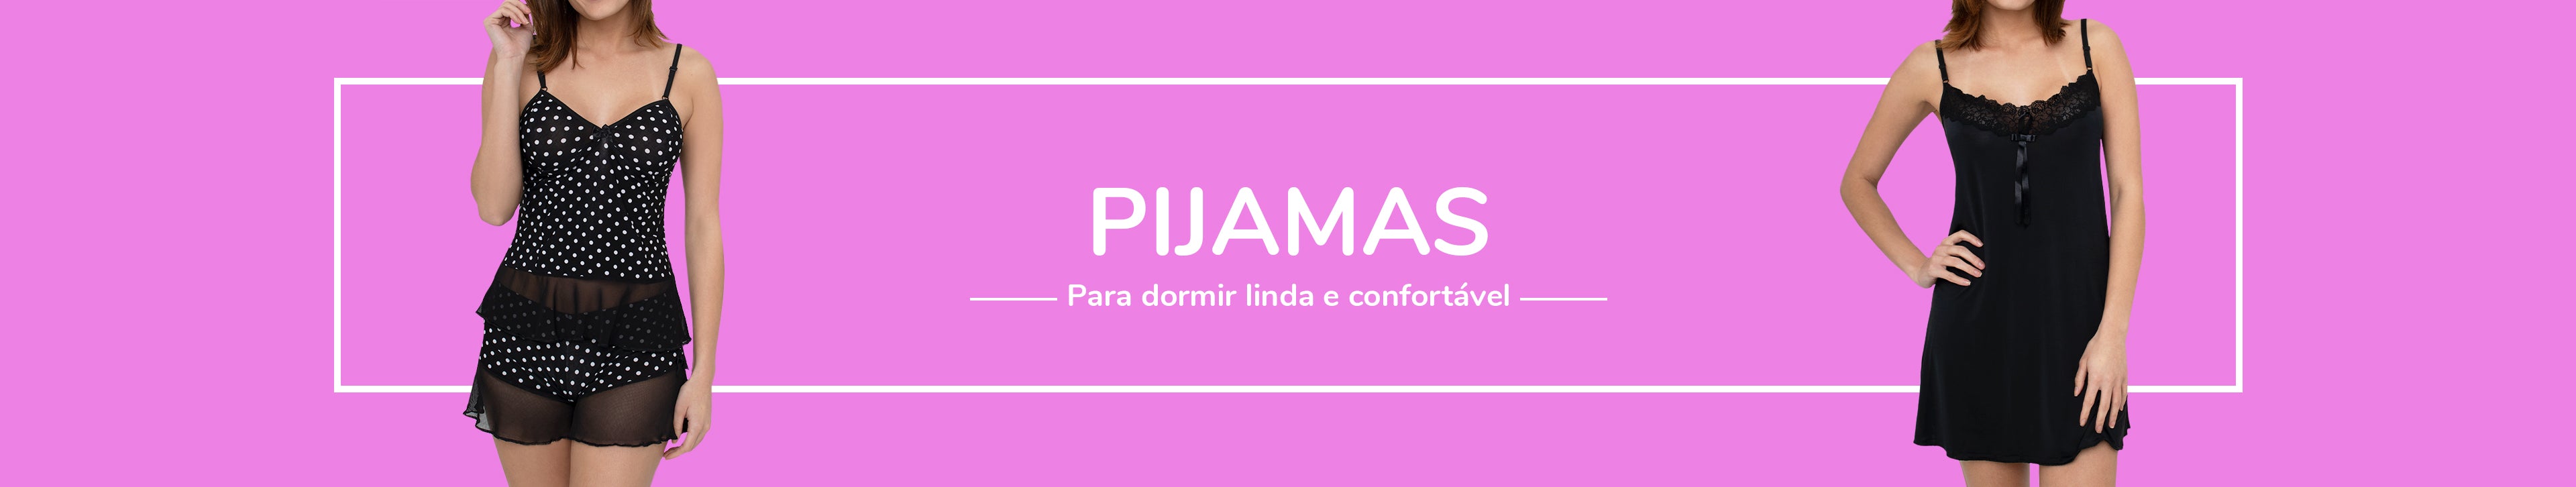 Camisolas e Pijamas Femininos